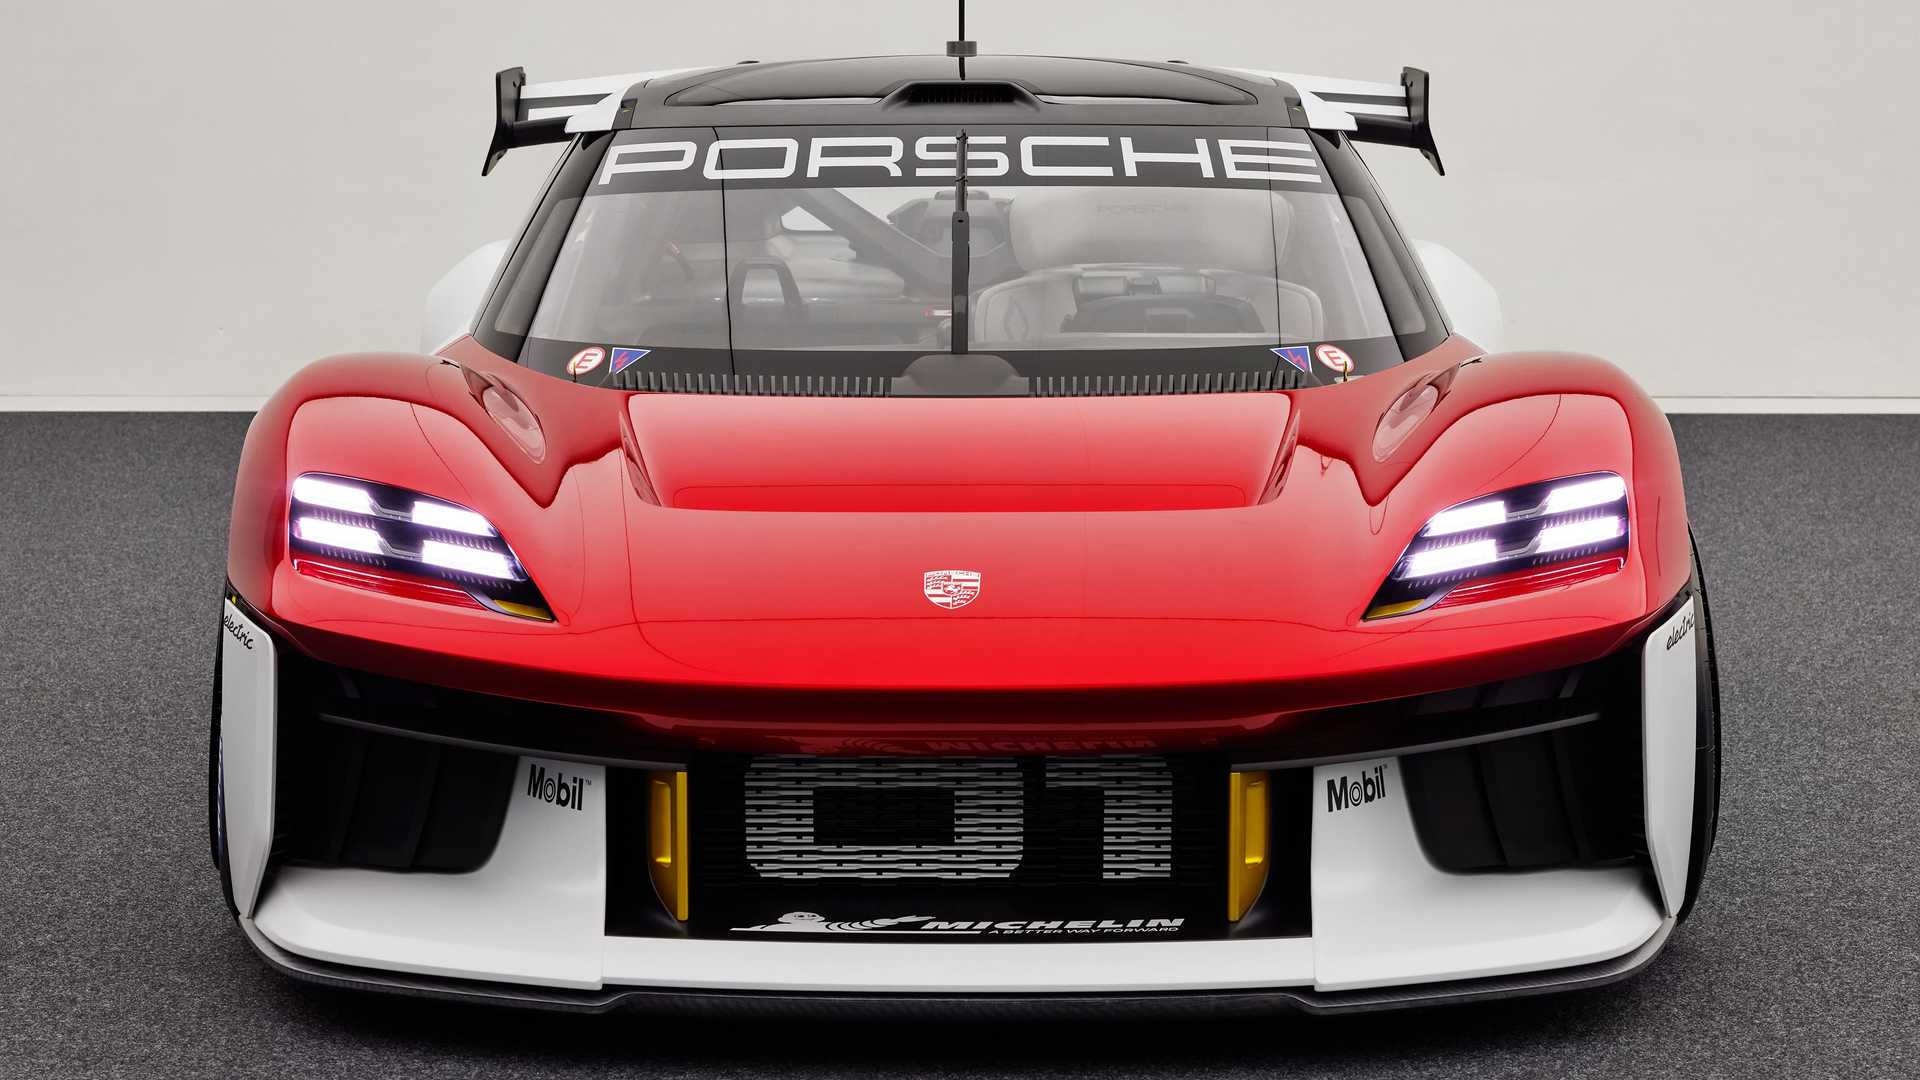 نمای جلو خودروی الکتریکی مفهومی پورشه میشن آر / Porsche Mission R Concept EV